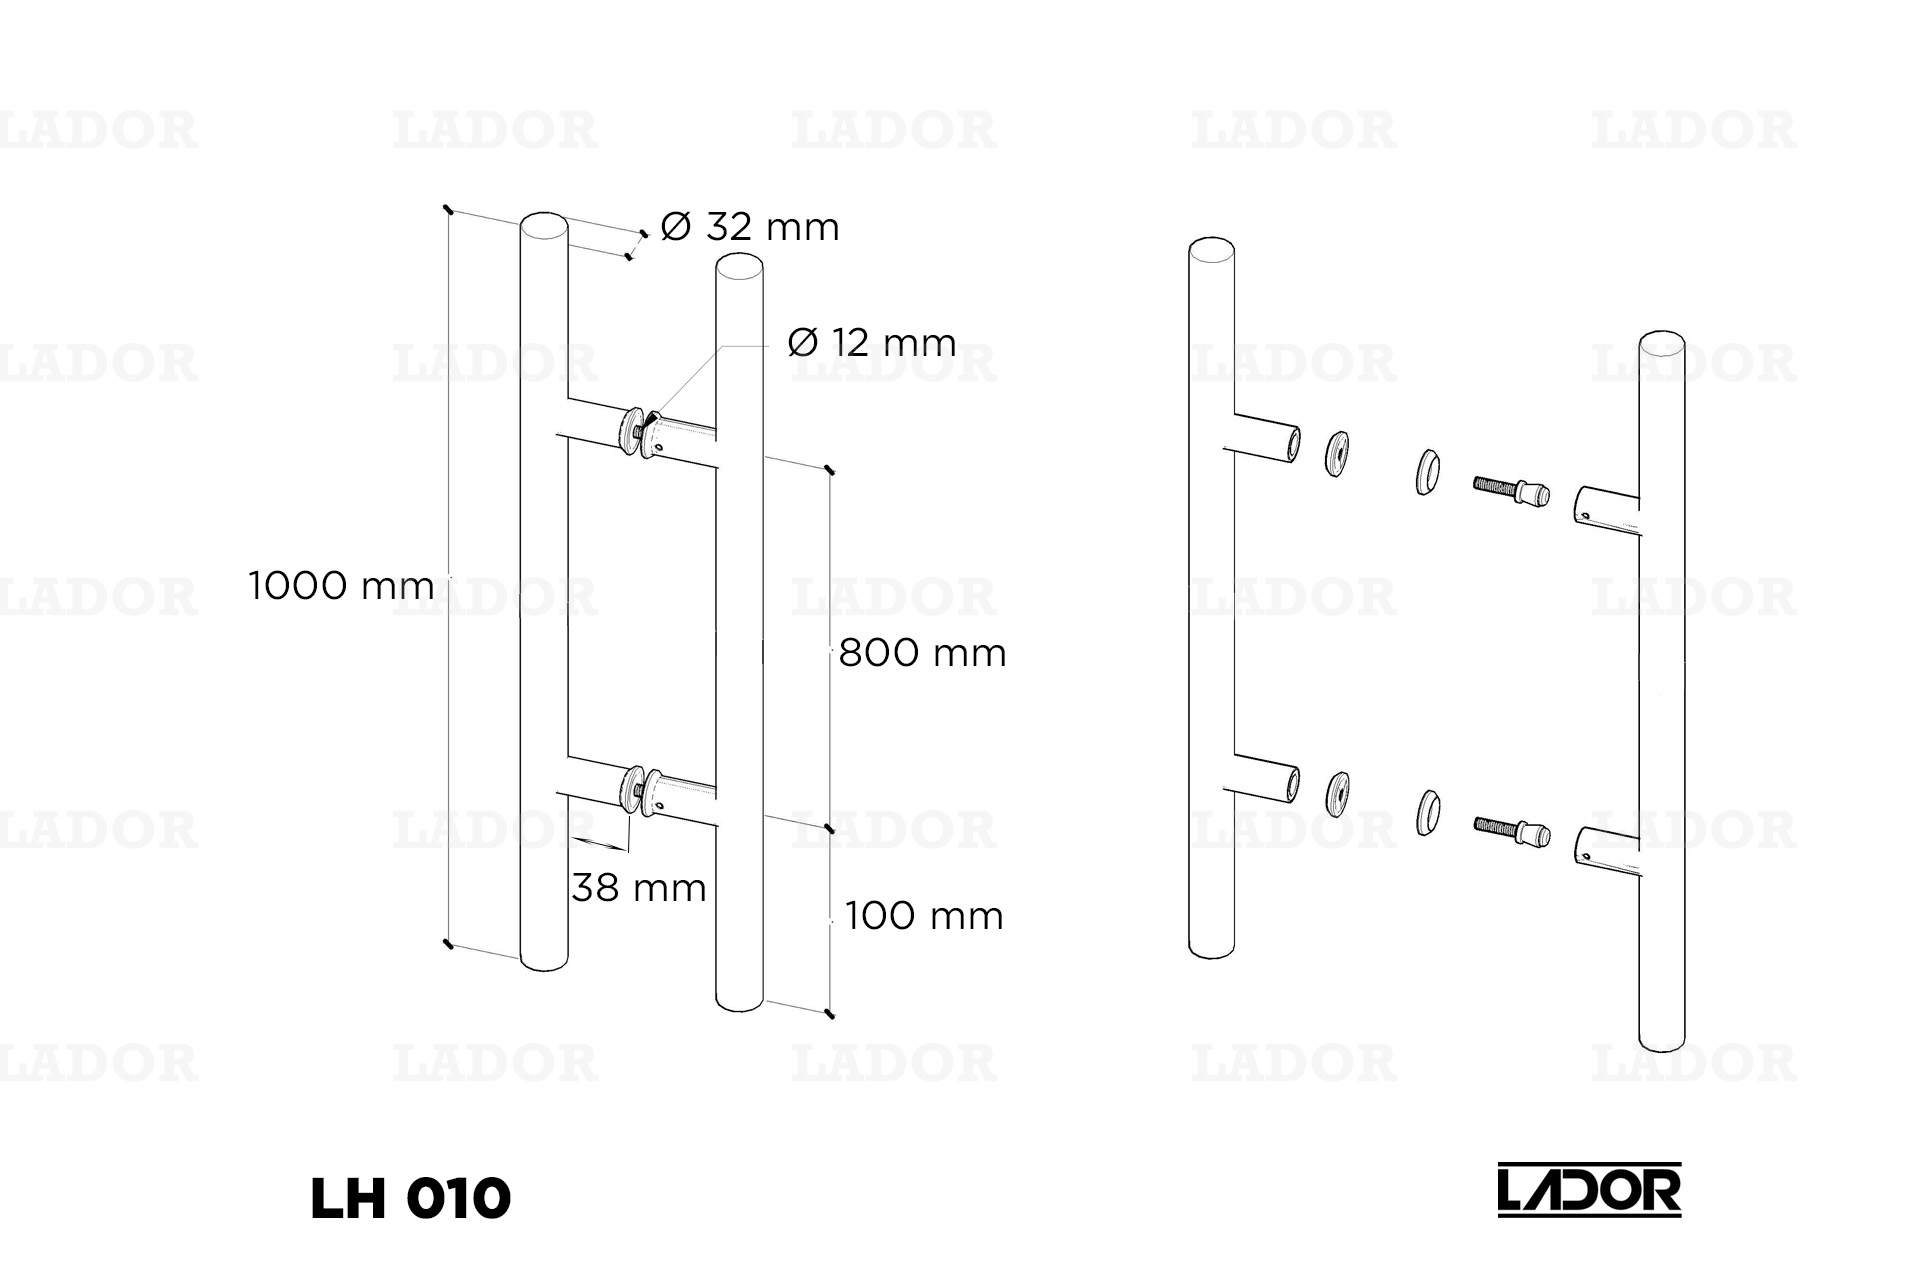 Glass door handle LADOR LH 010 (1000 mm)